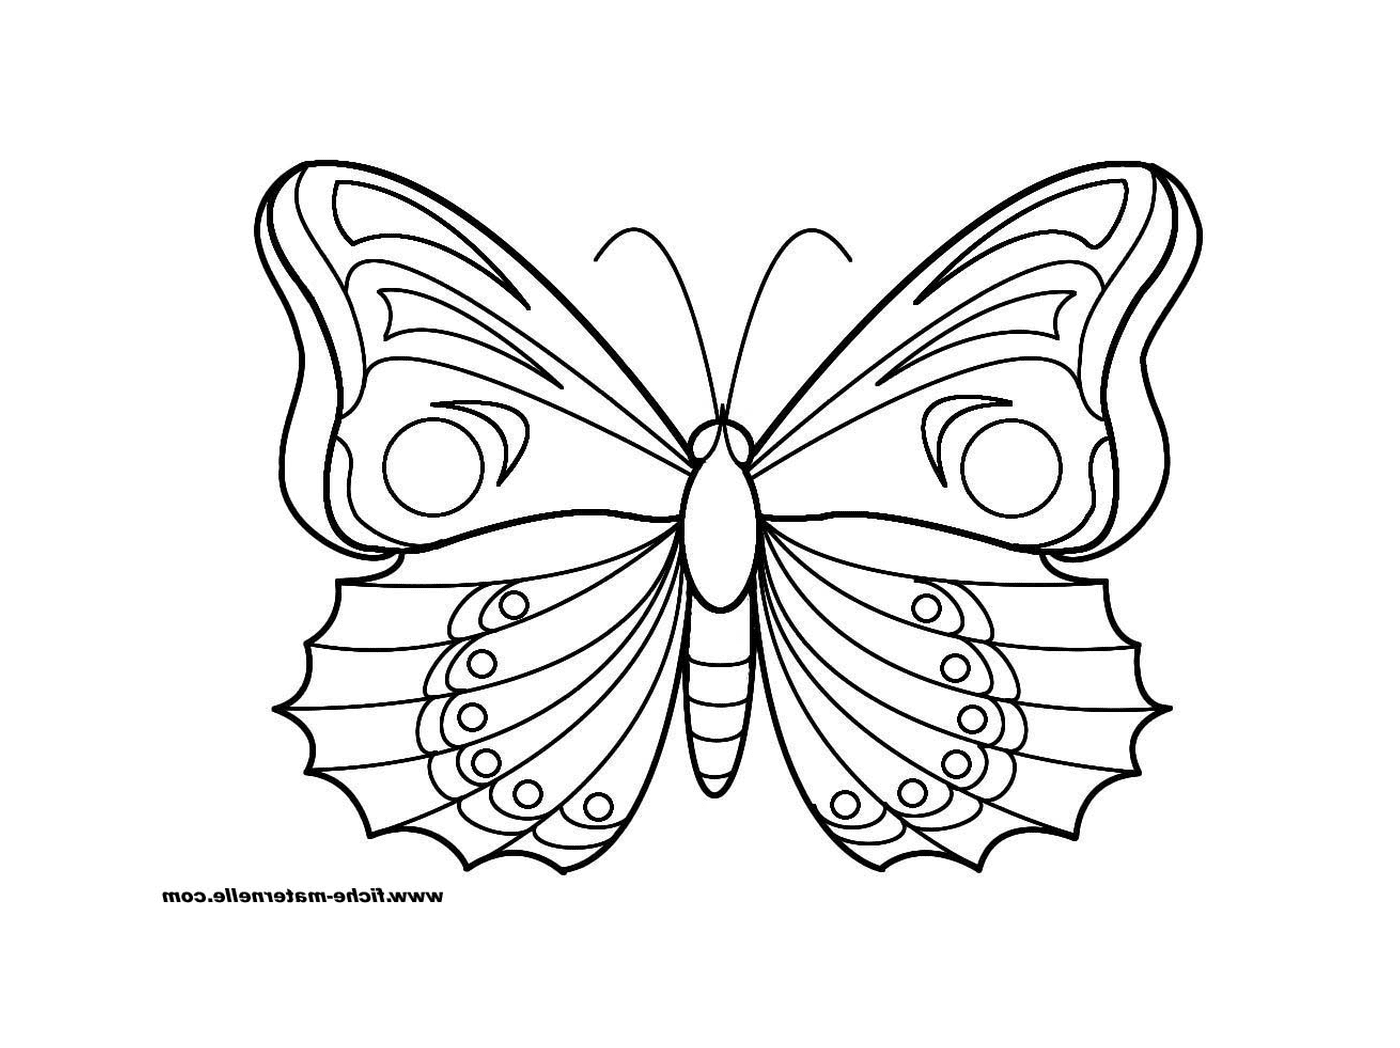  borboleta com asas claras 